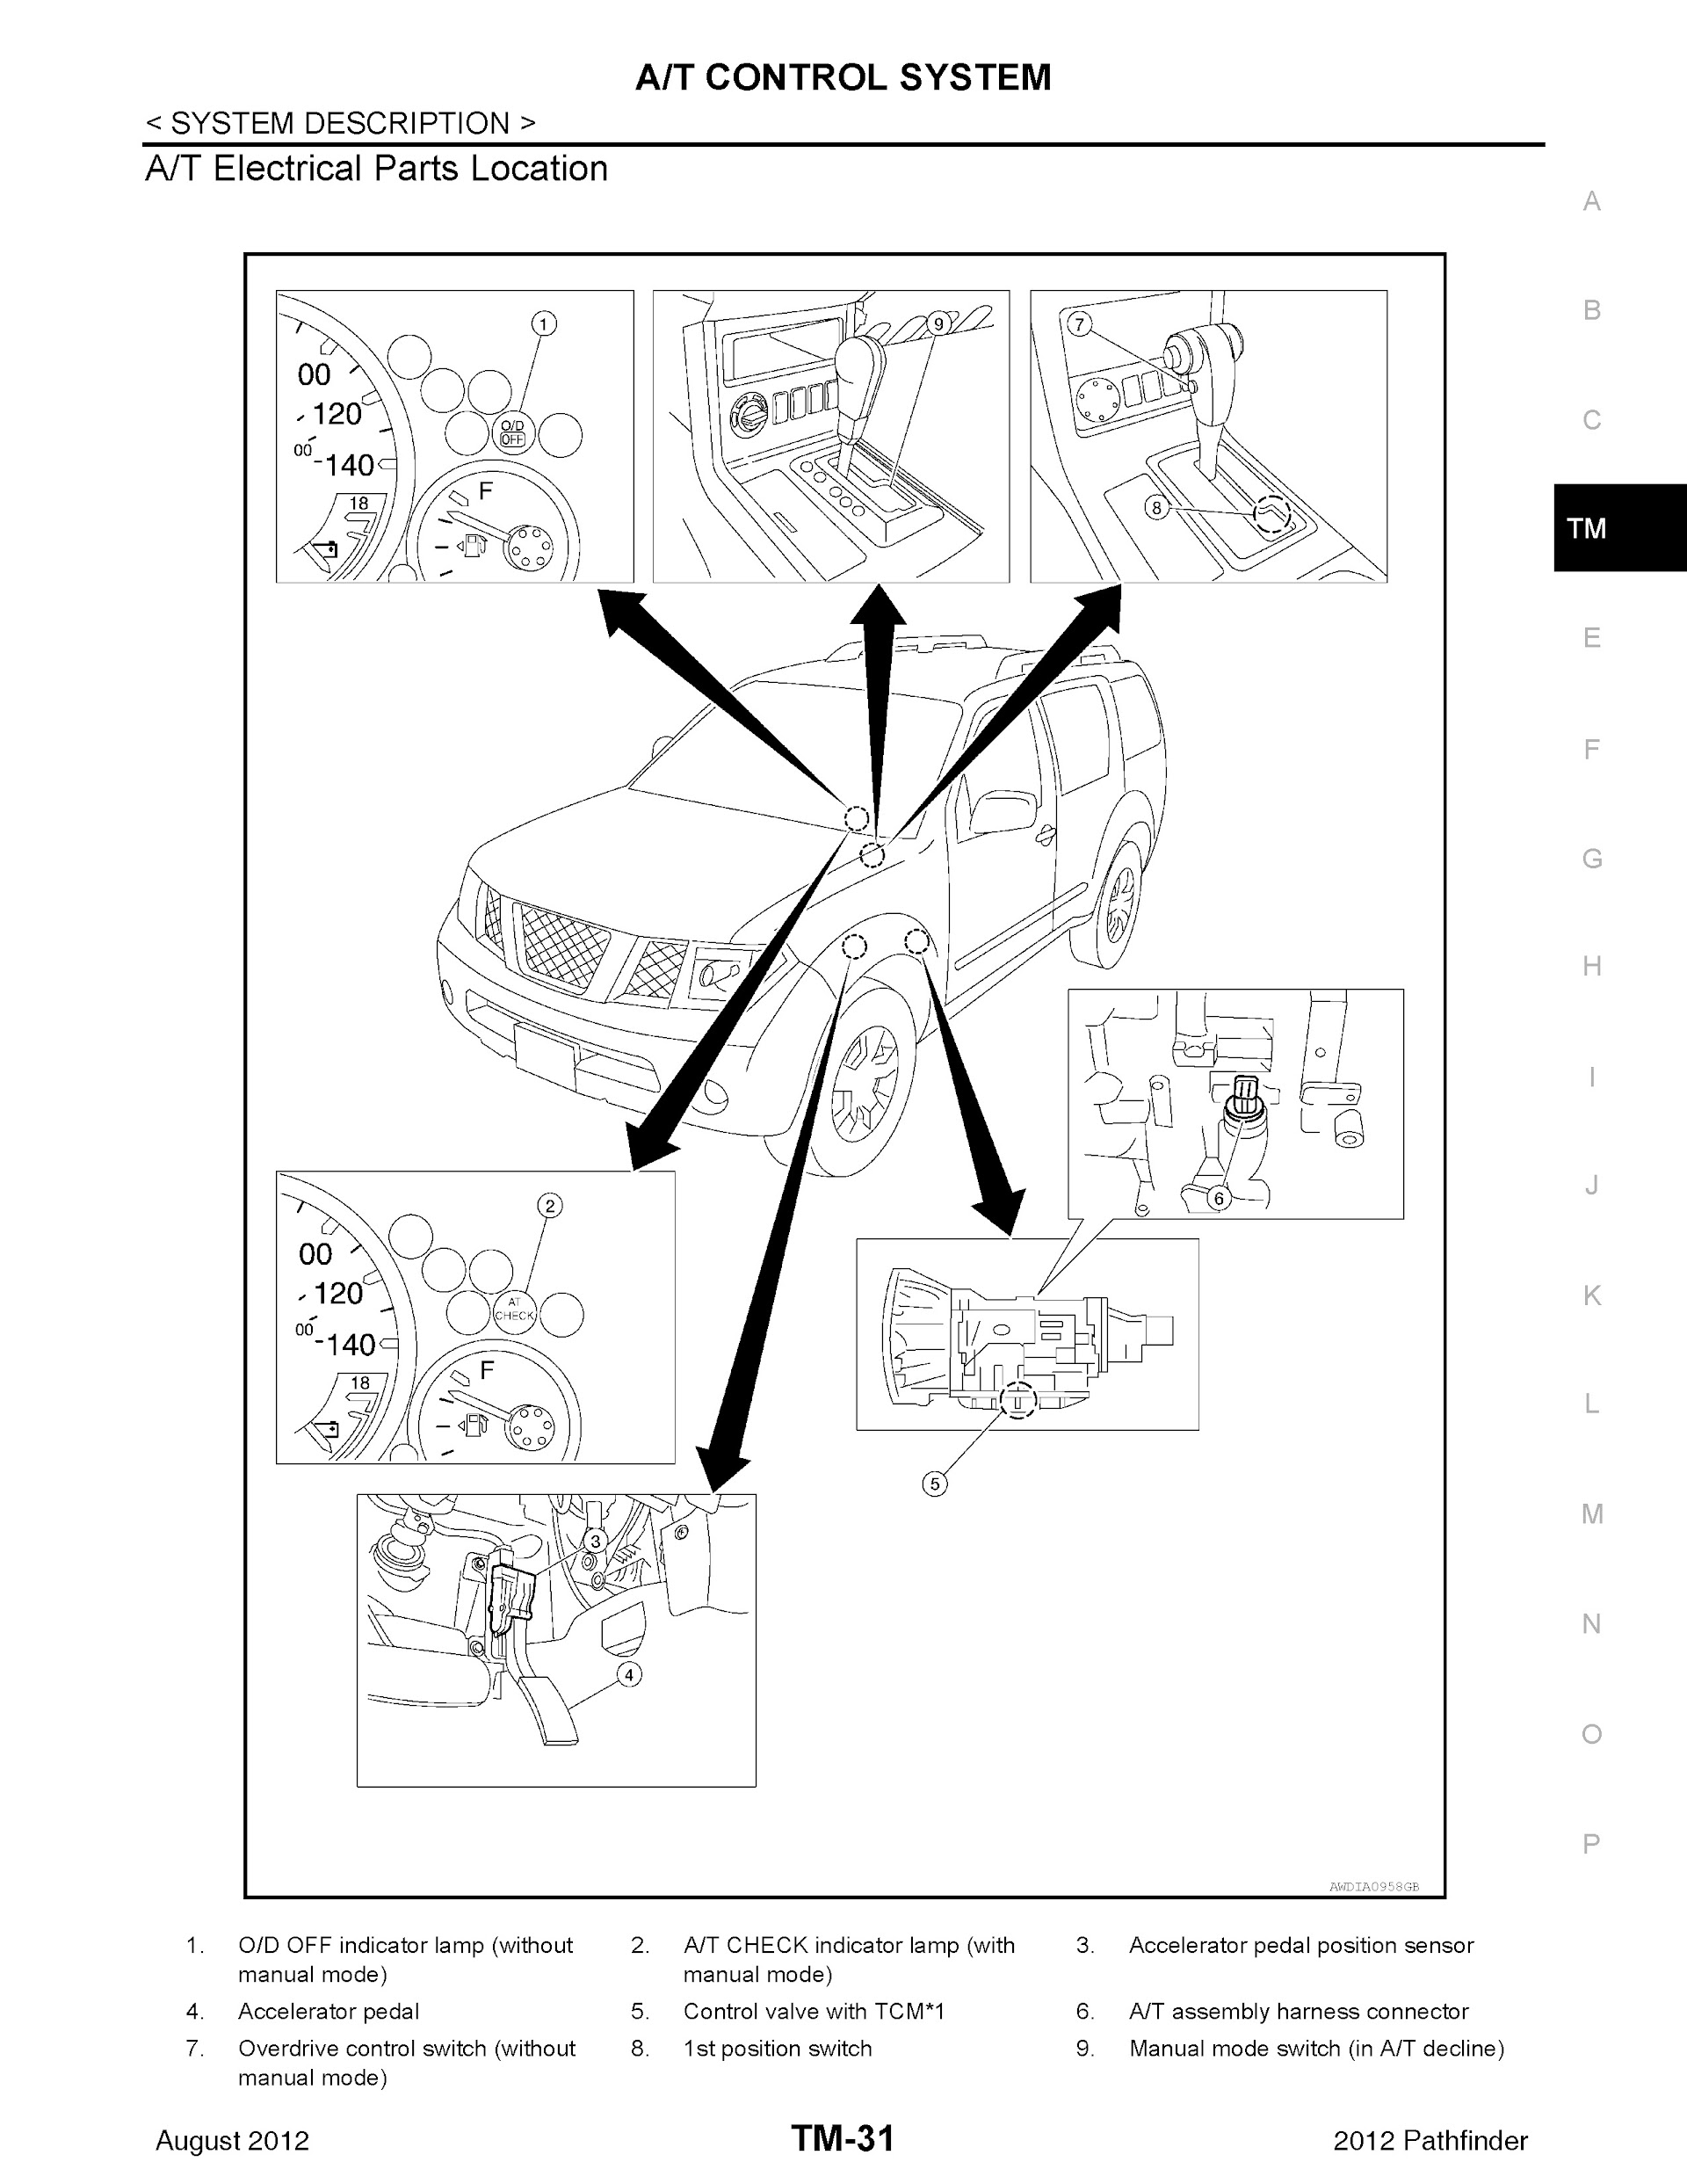 Download 2012 Nissan Pathfinder Repair Manual